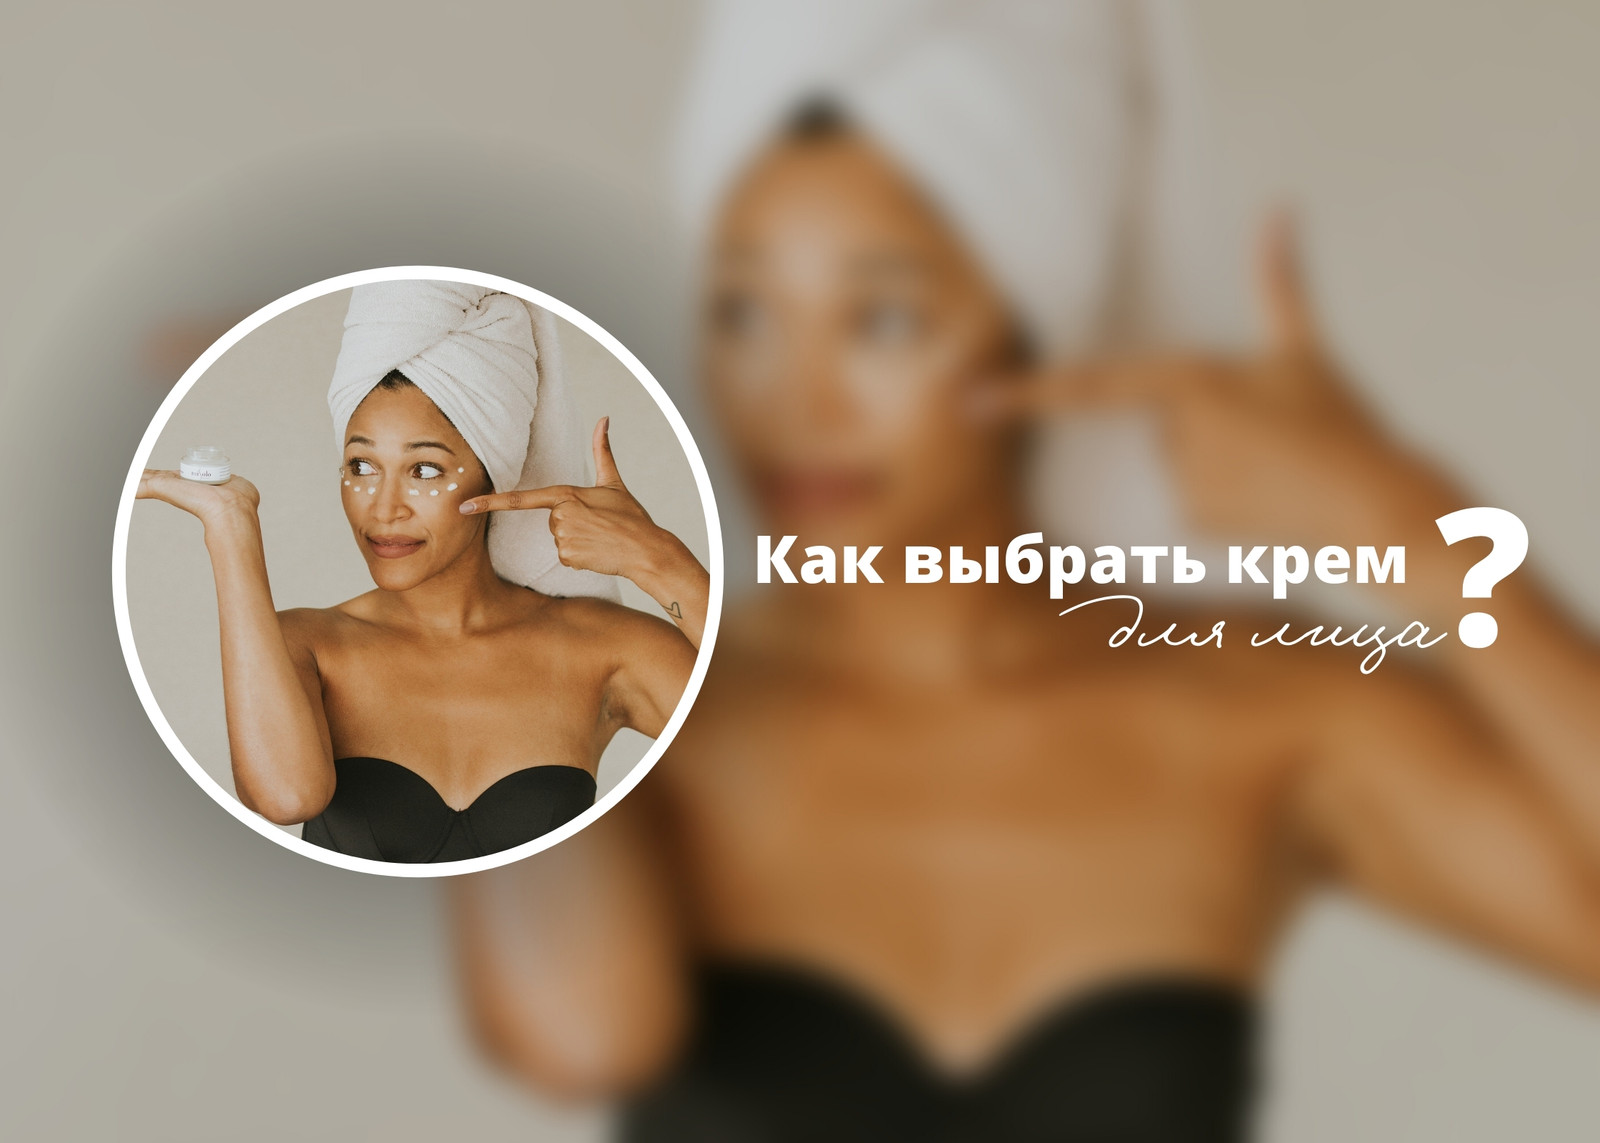 Готовые картинки постов ВКонтакте бесплатно | Canva